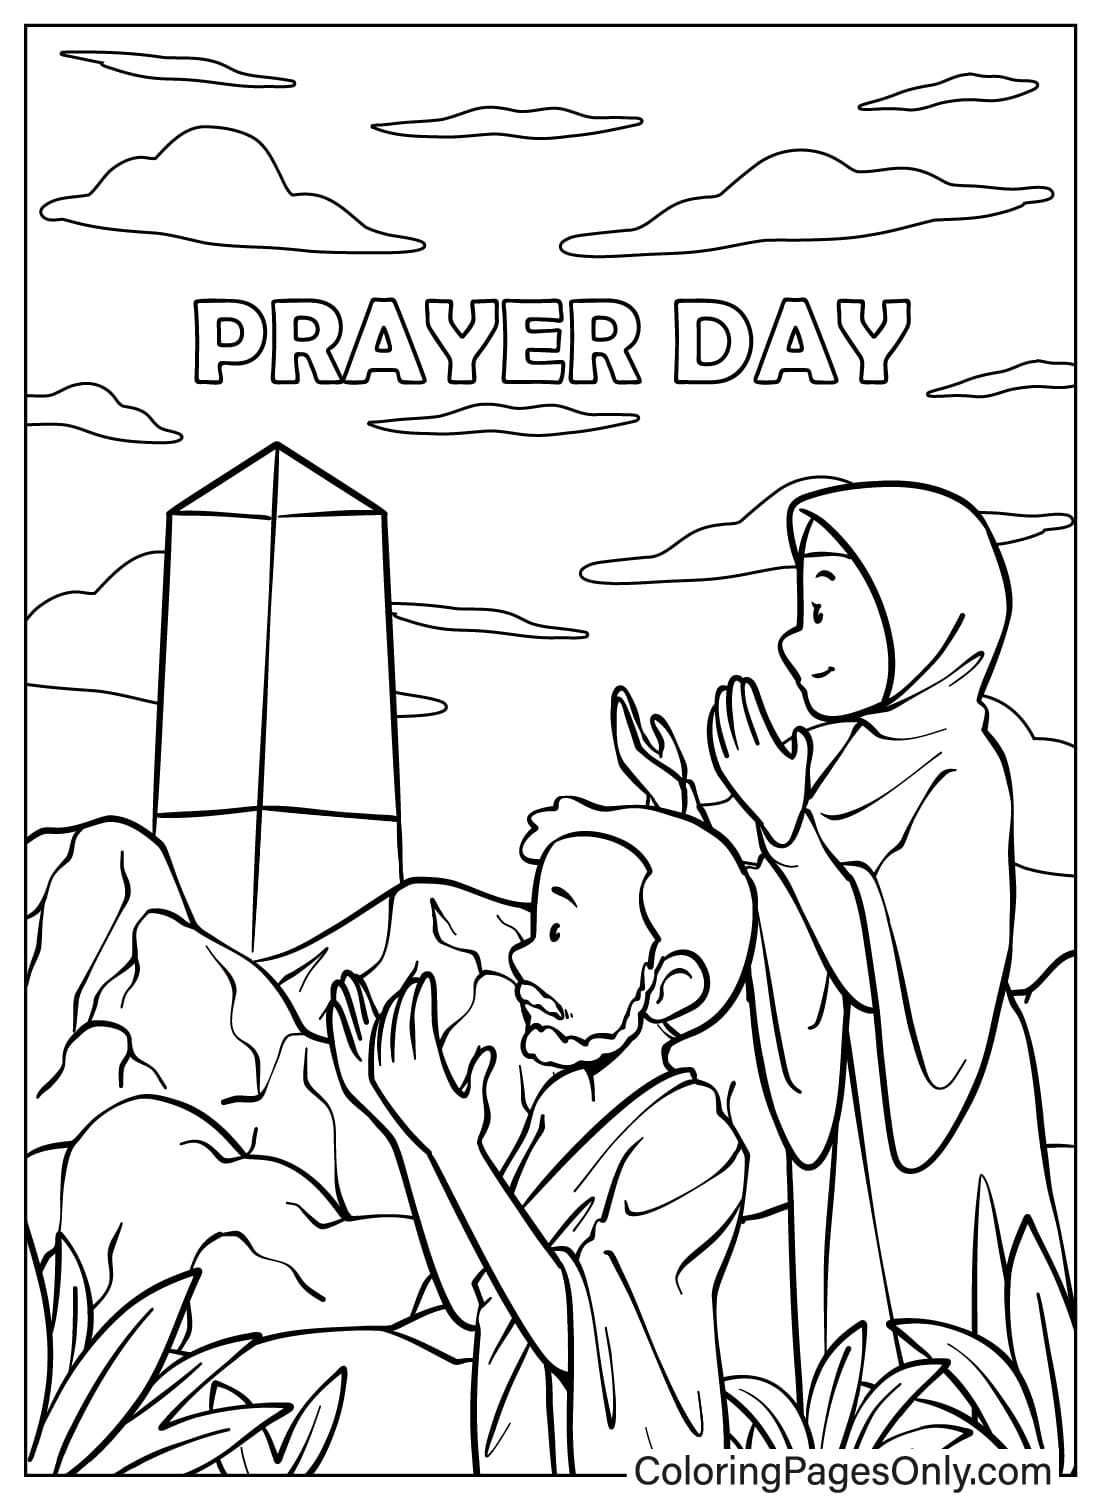 رجل وامرأة يصليان من يوم الصلاة